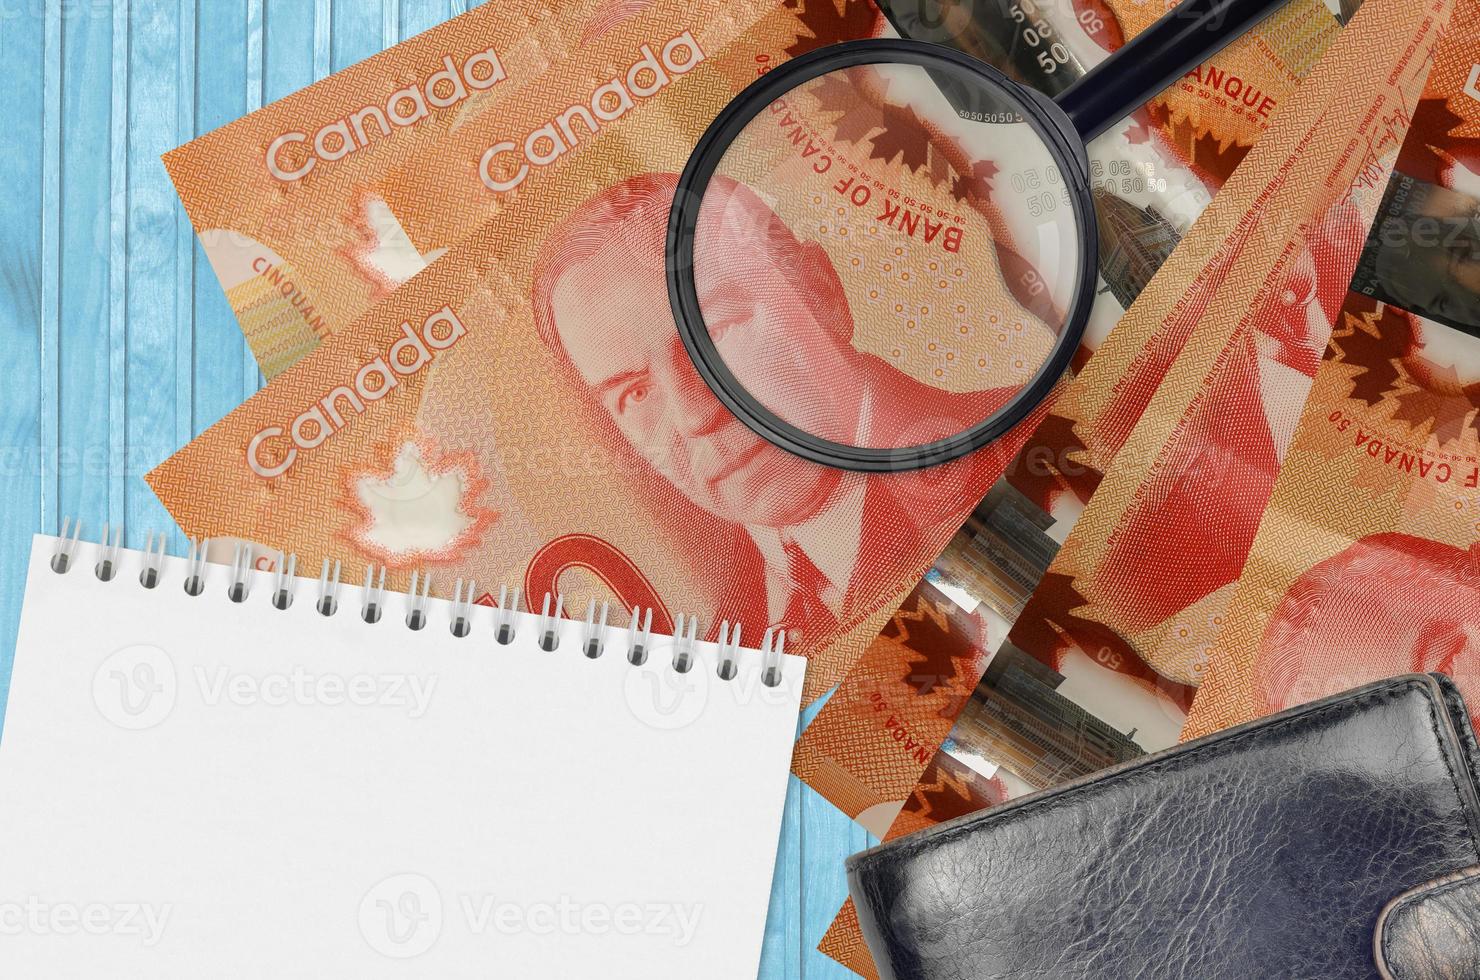 Notas de 50 dólares canadenses e lupa com bolsa preta e bloco de notas. conceito de dinheiro falso. procure diferenças nos detalhes das cédulas de dinheiro para detectar falsos foto